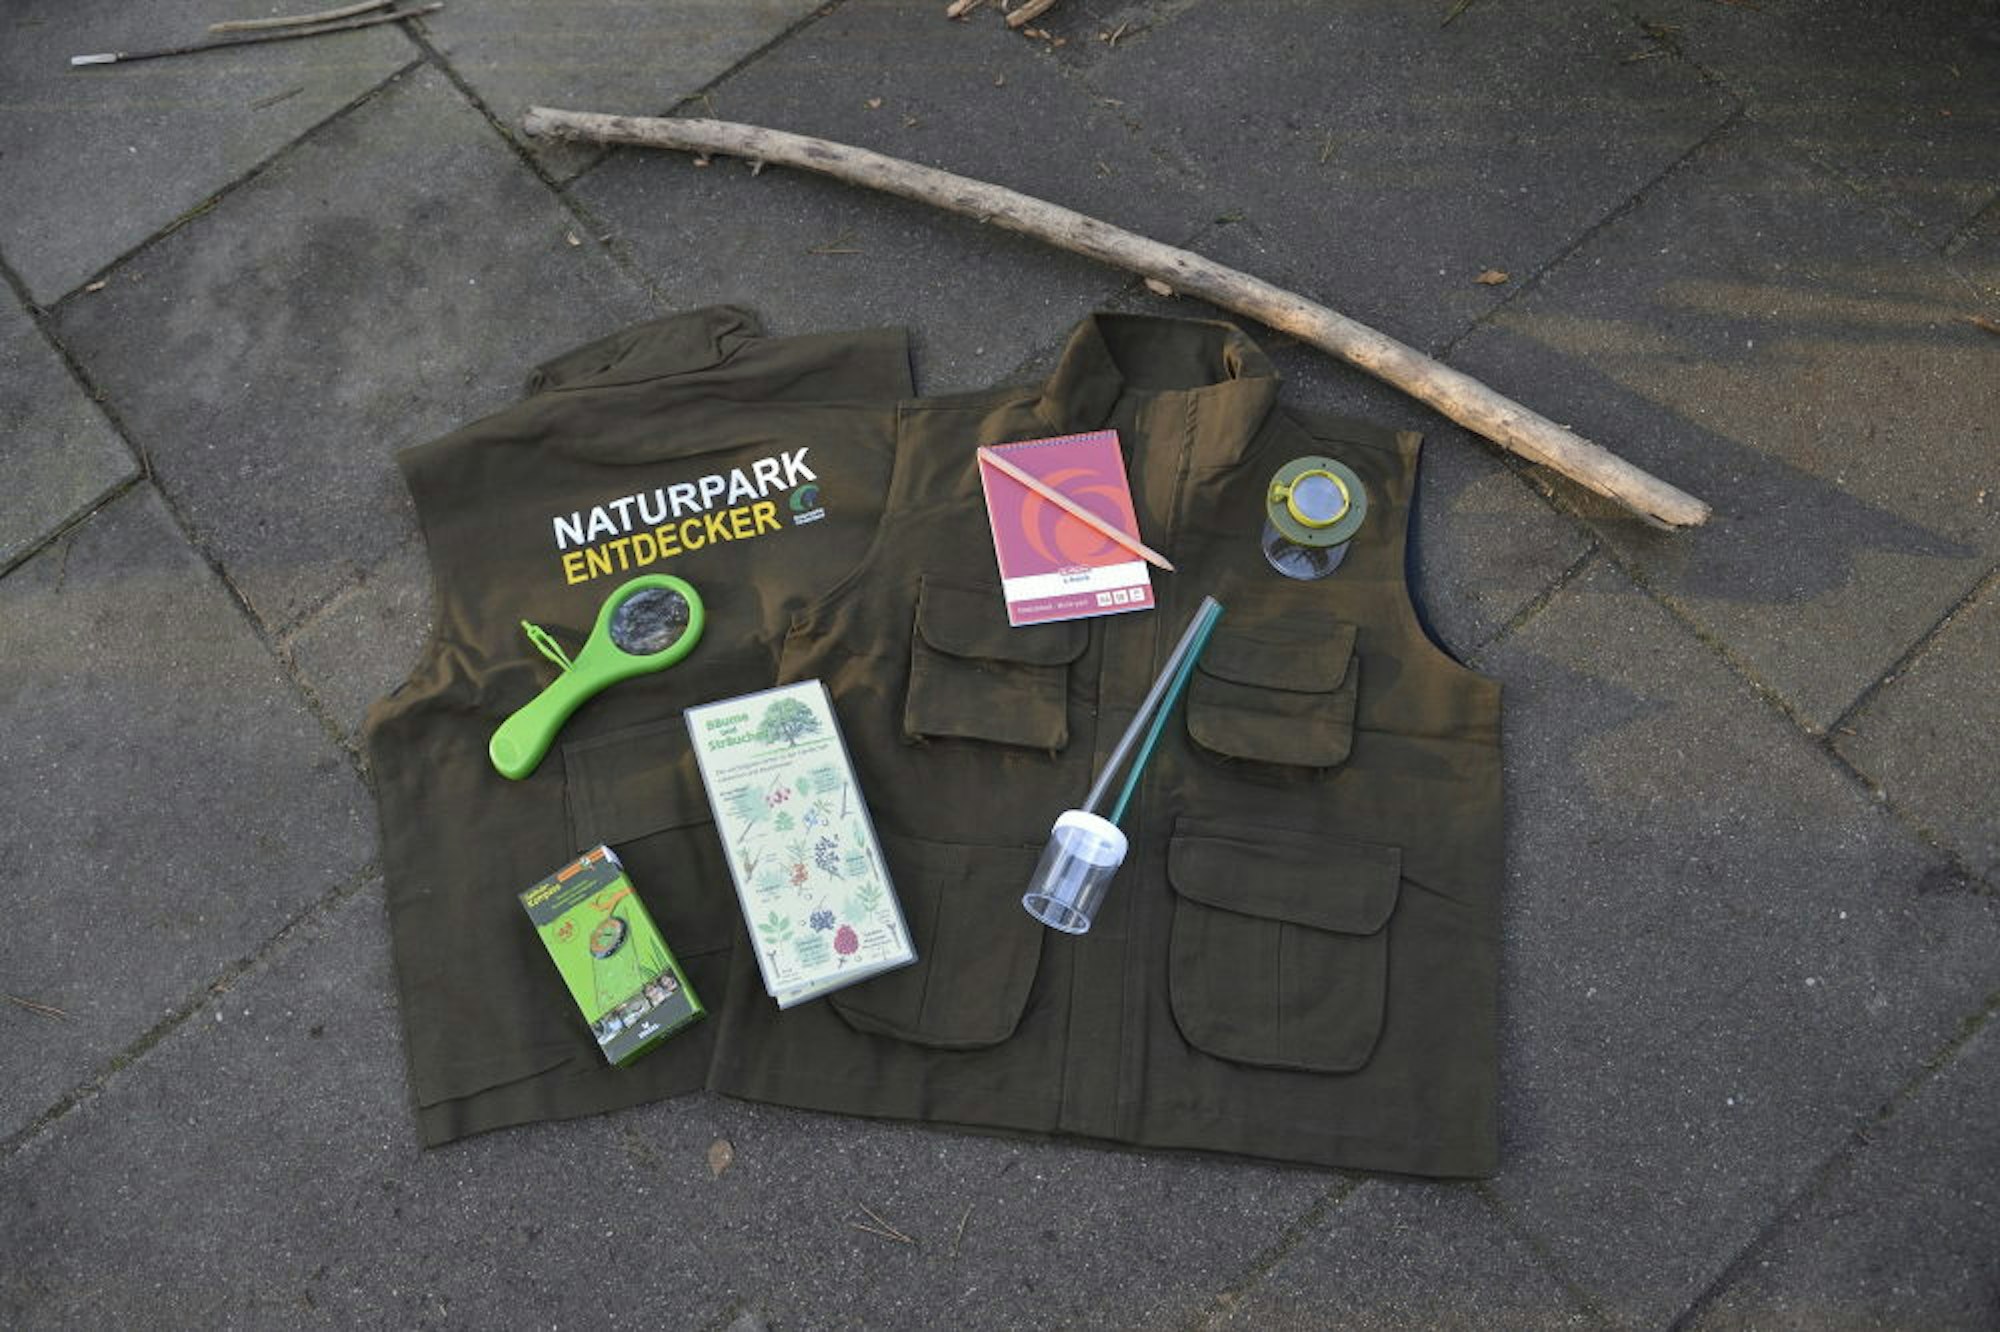 Zu jeder Naturpark-Entdeckerweste gehört eine umfangreiche Ausrüstung, die je nach Einsatz in den Taschen verstaut werden kann.